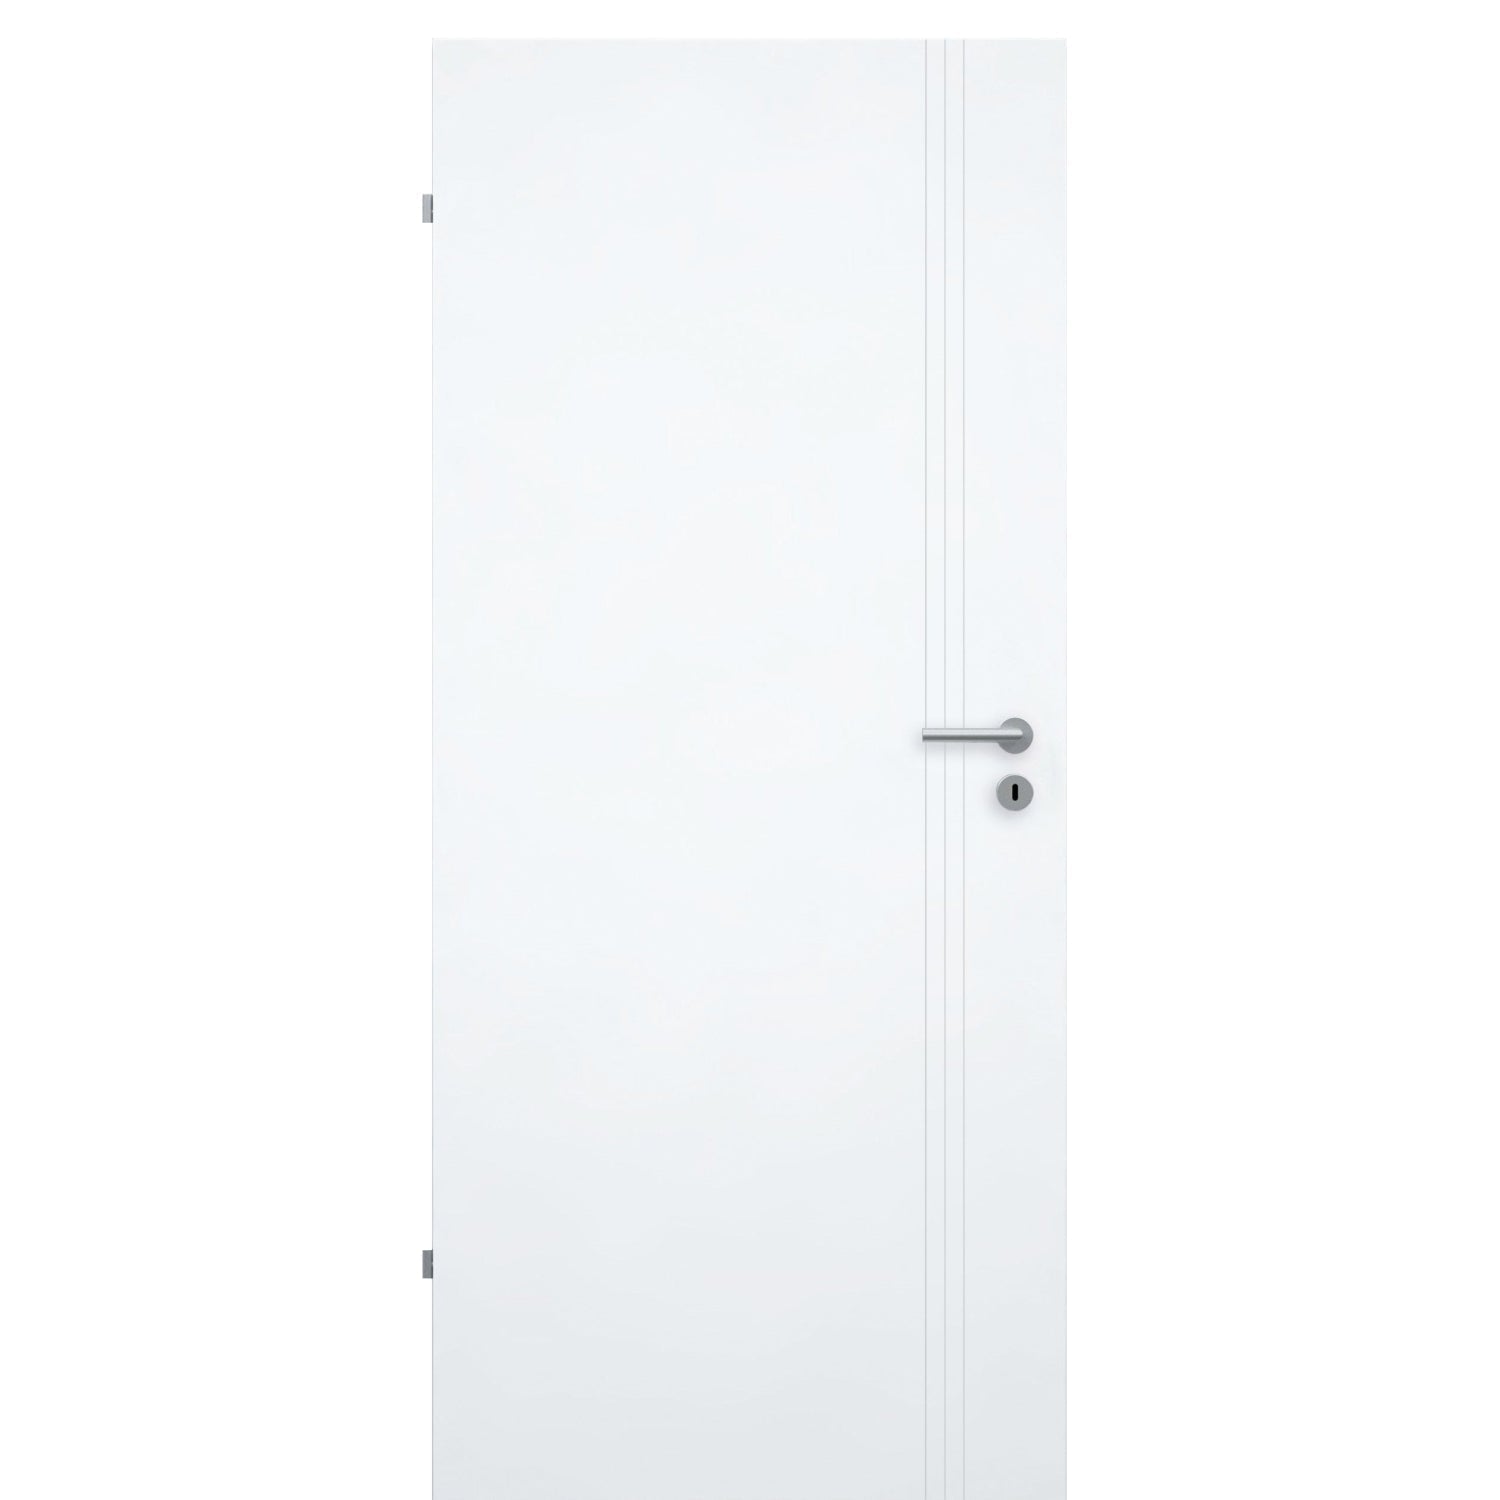 Zimmertür brillant-weiß 3 Rillen aufrecht Schlossseite Designkante - Modell Designtür VS33